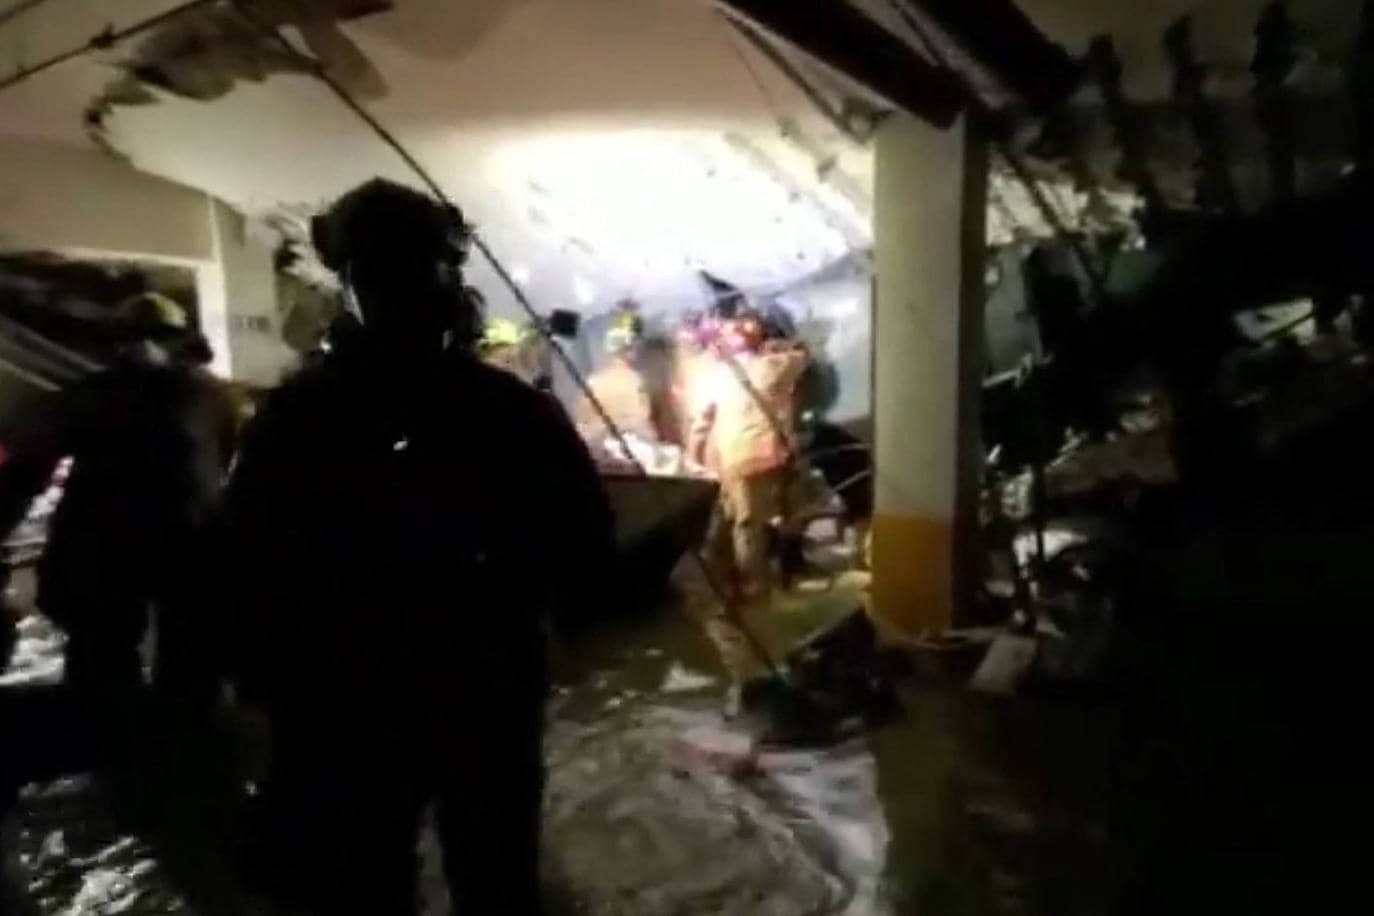 Continúa la búsqueda de 159 desaparecidos en el derrumbe de un edificio en Miami